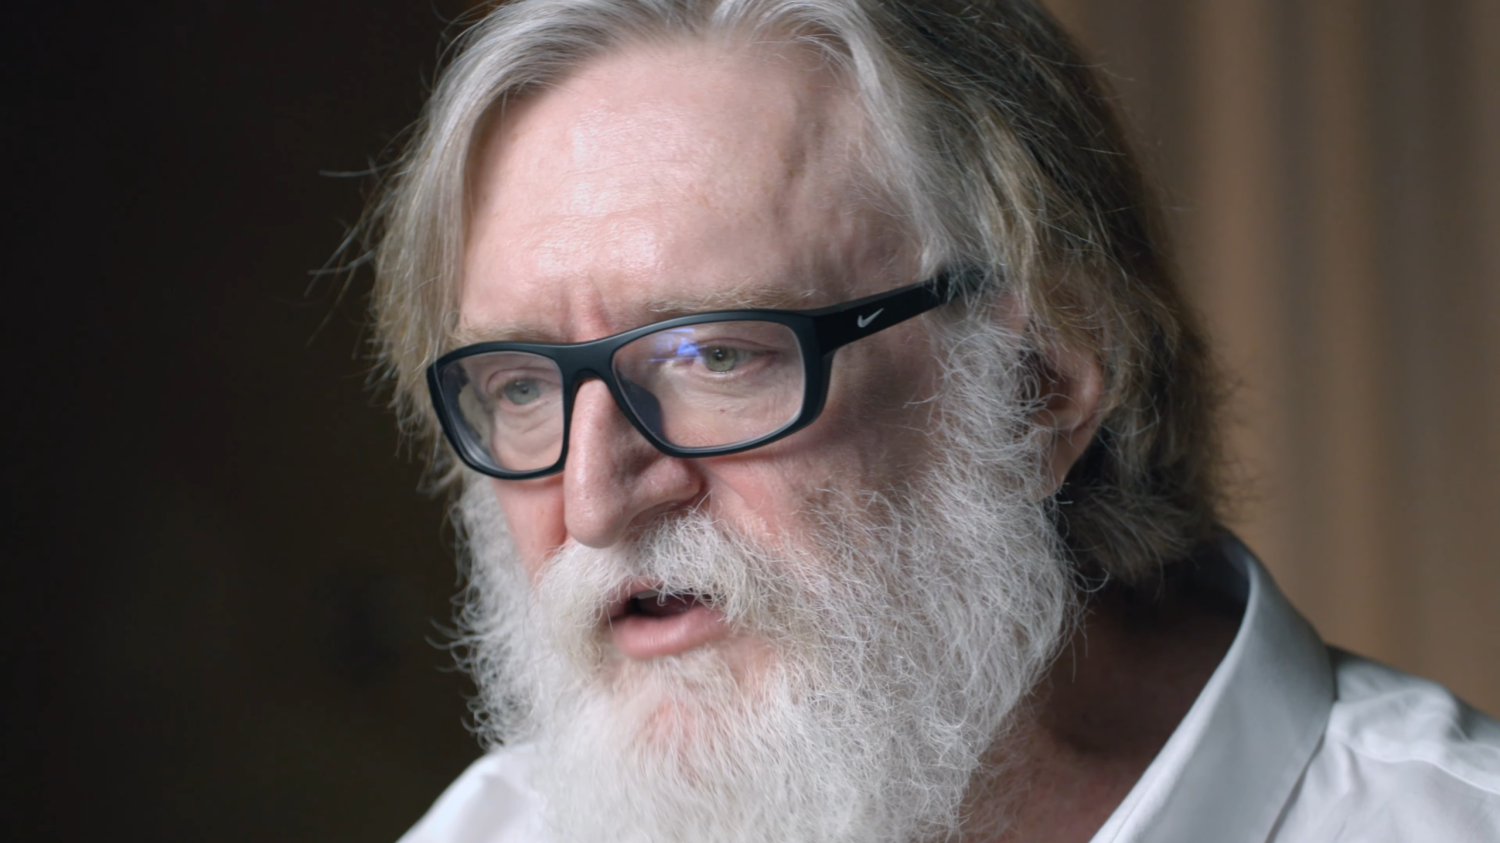 Gabe Newell - conheça um dos fundadores da Valve Corporation